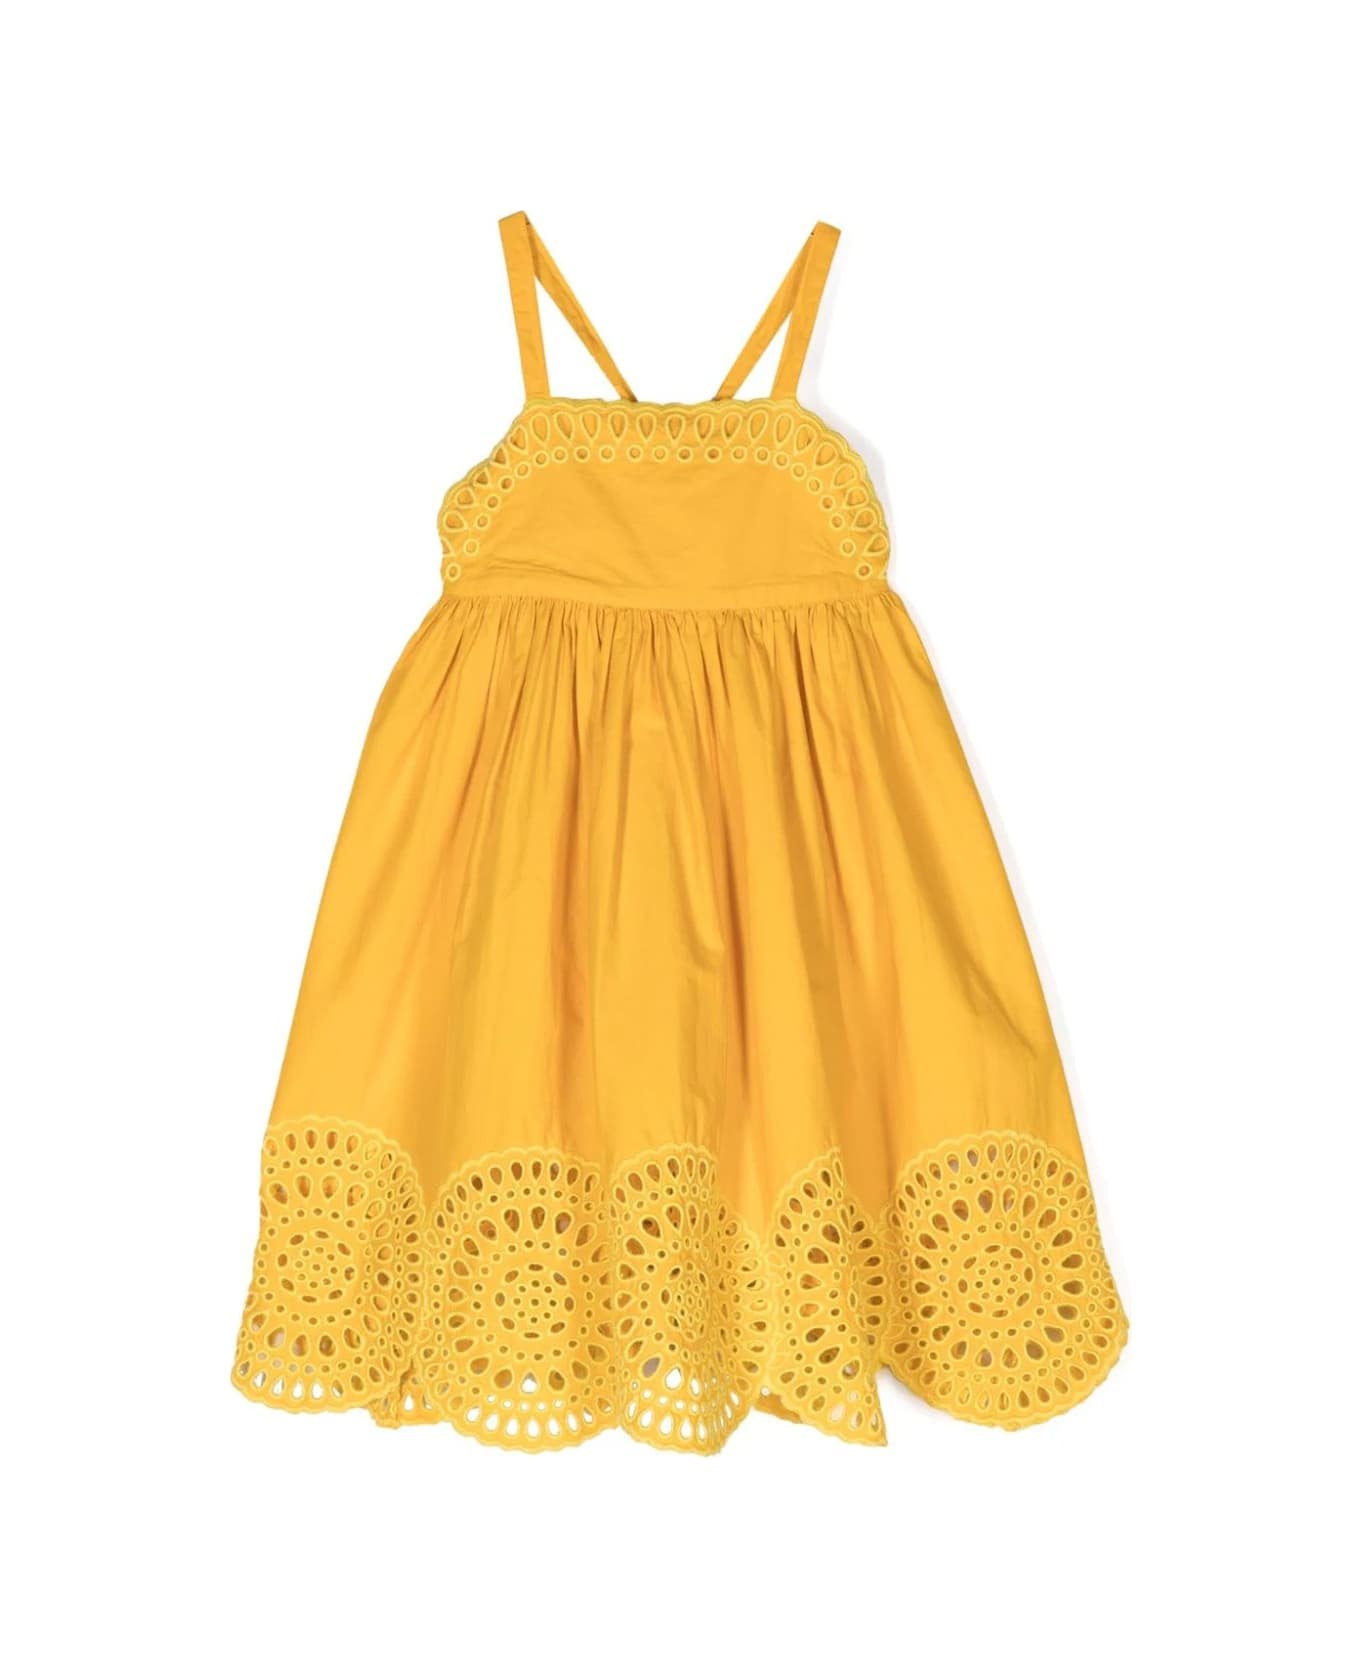 Stella McCartney Kids Yellow Sangallo Cami Dress - Yellow